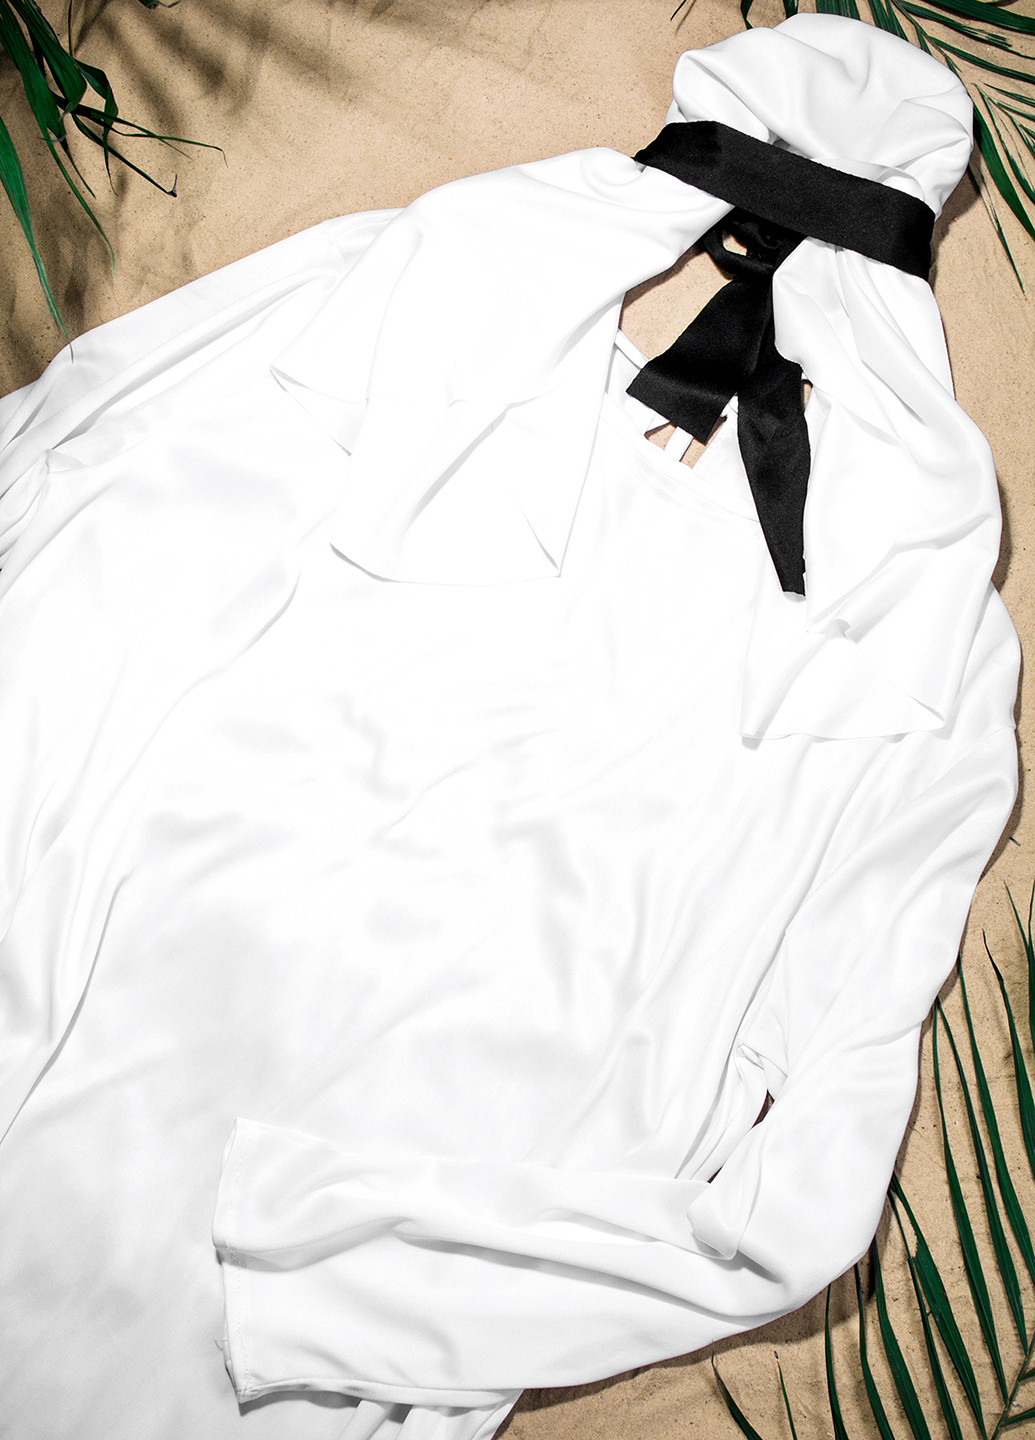 Маскарадный костюм Арабского шейха La Mascarade (109392518)